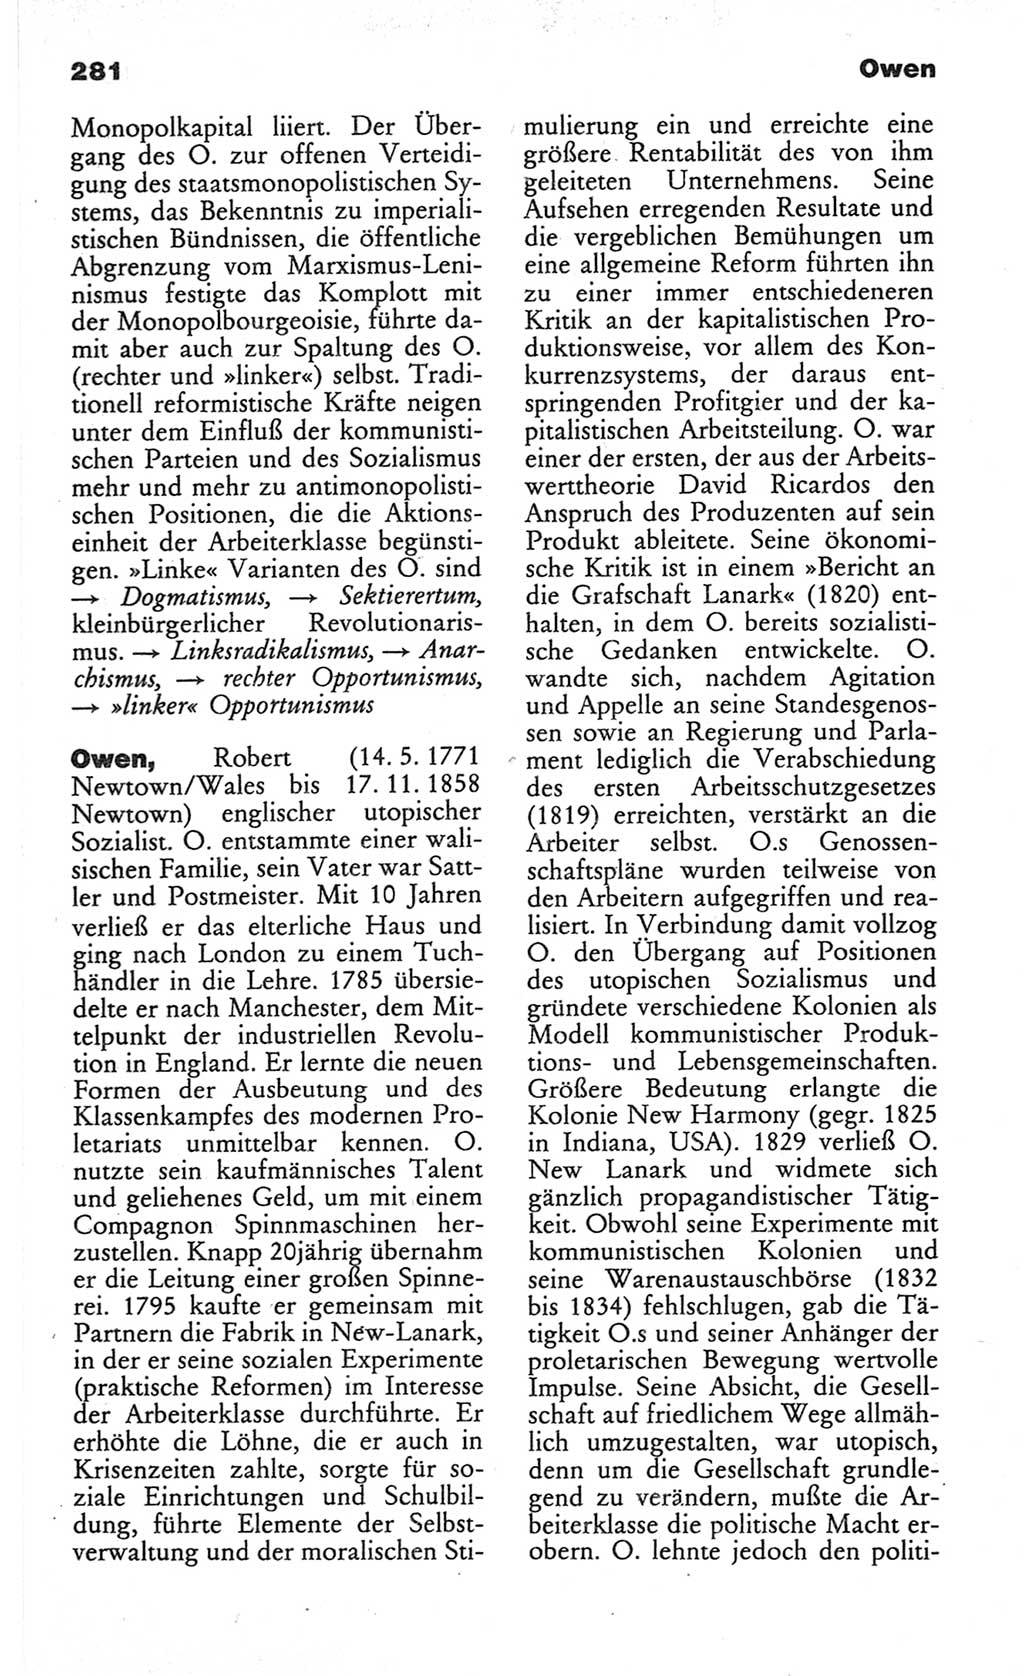 Wörterbuch des wissenschaftlichen Kommunismus [Deutsche Demokratische Republik (DDR)] 1982, Seite 281 (Wb. wiss. Komm. DDR 1982, S. 281)